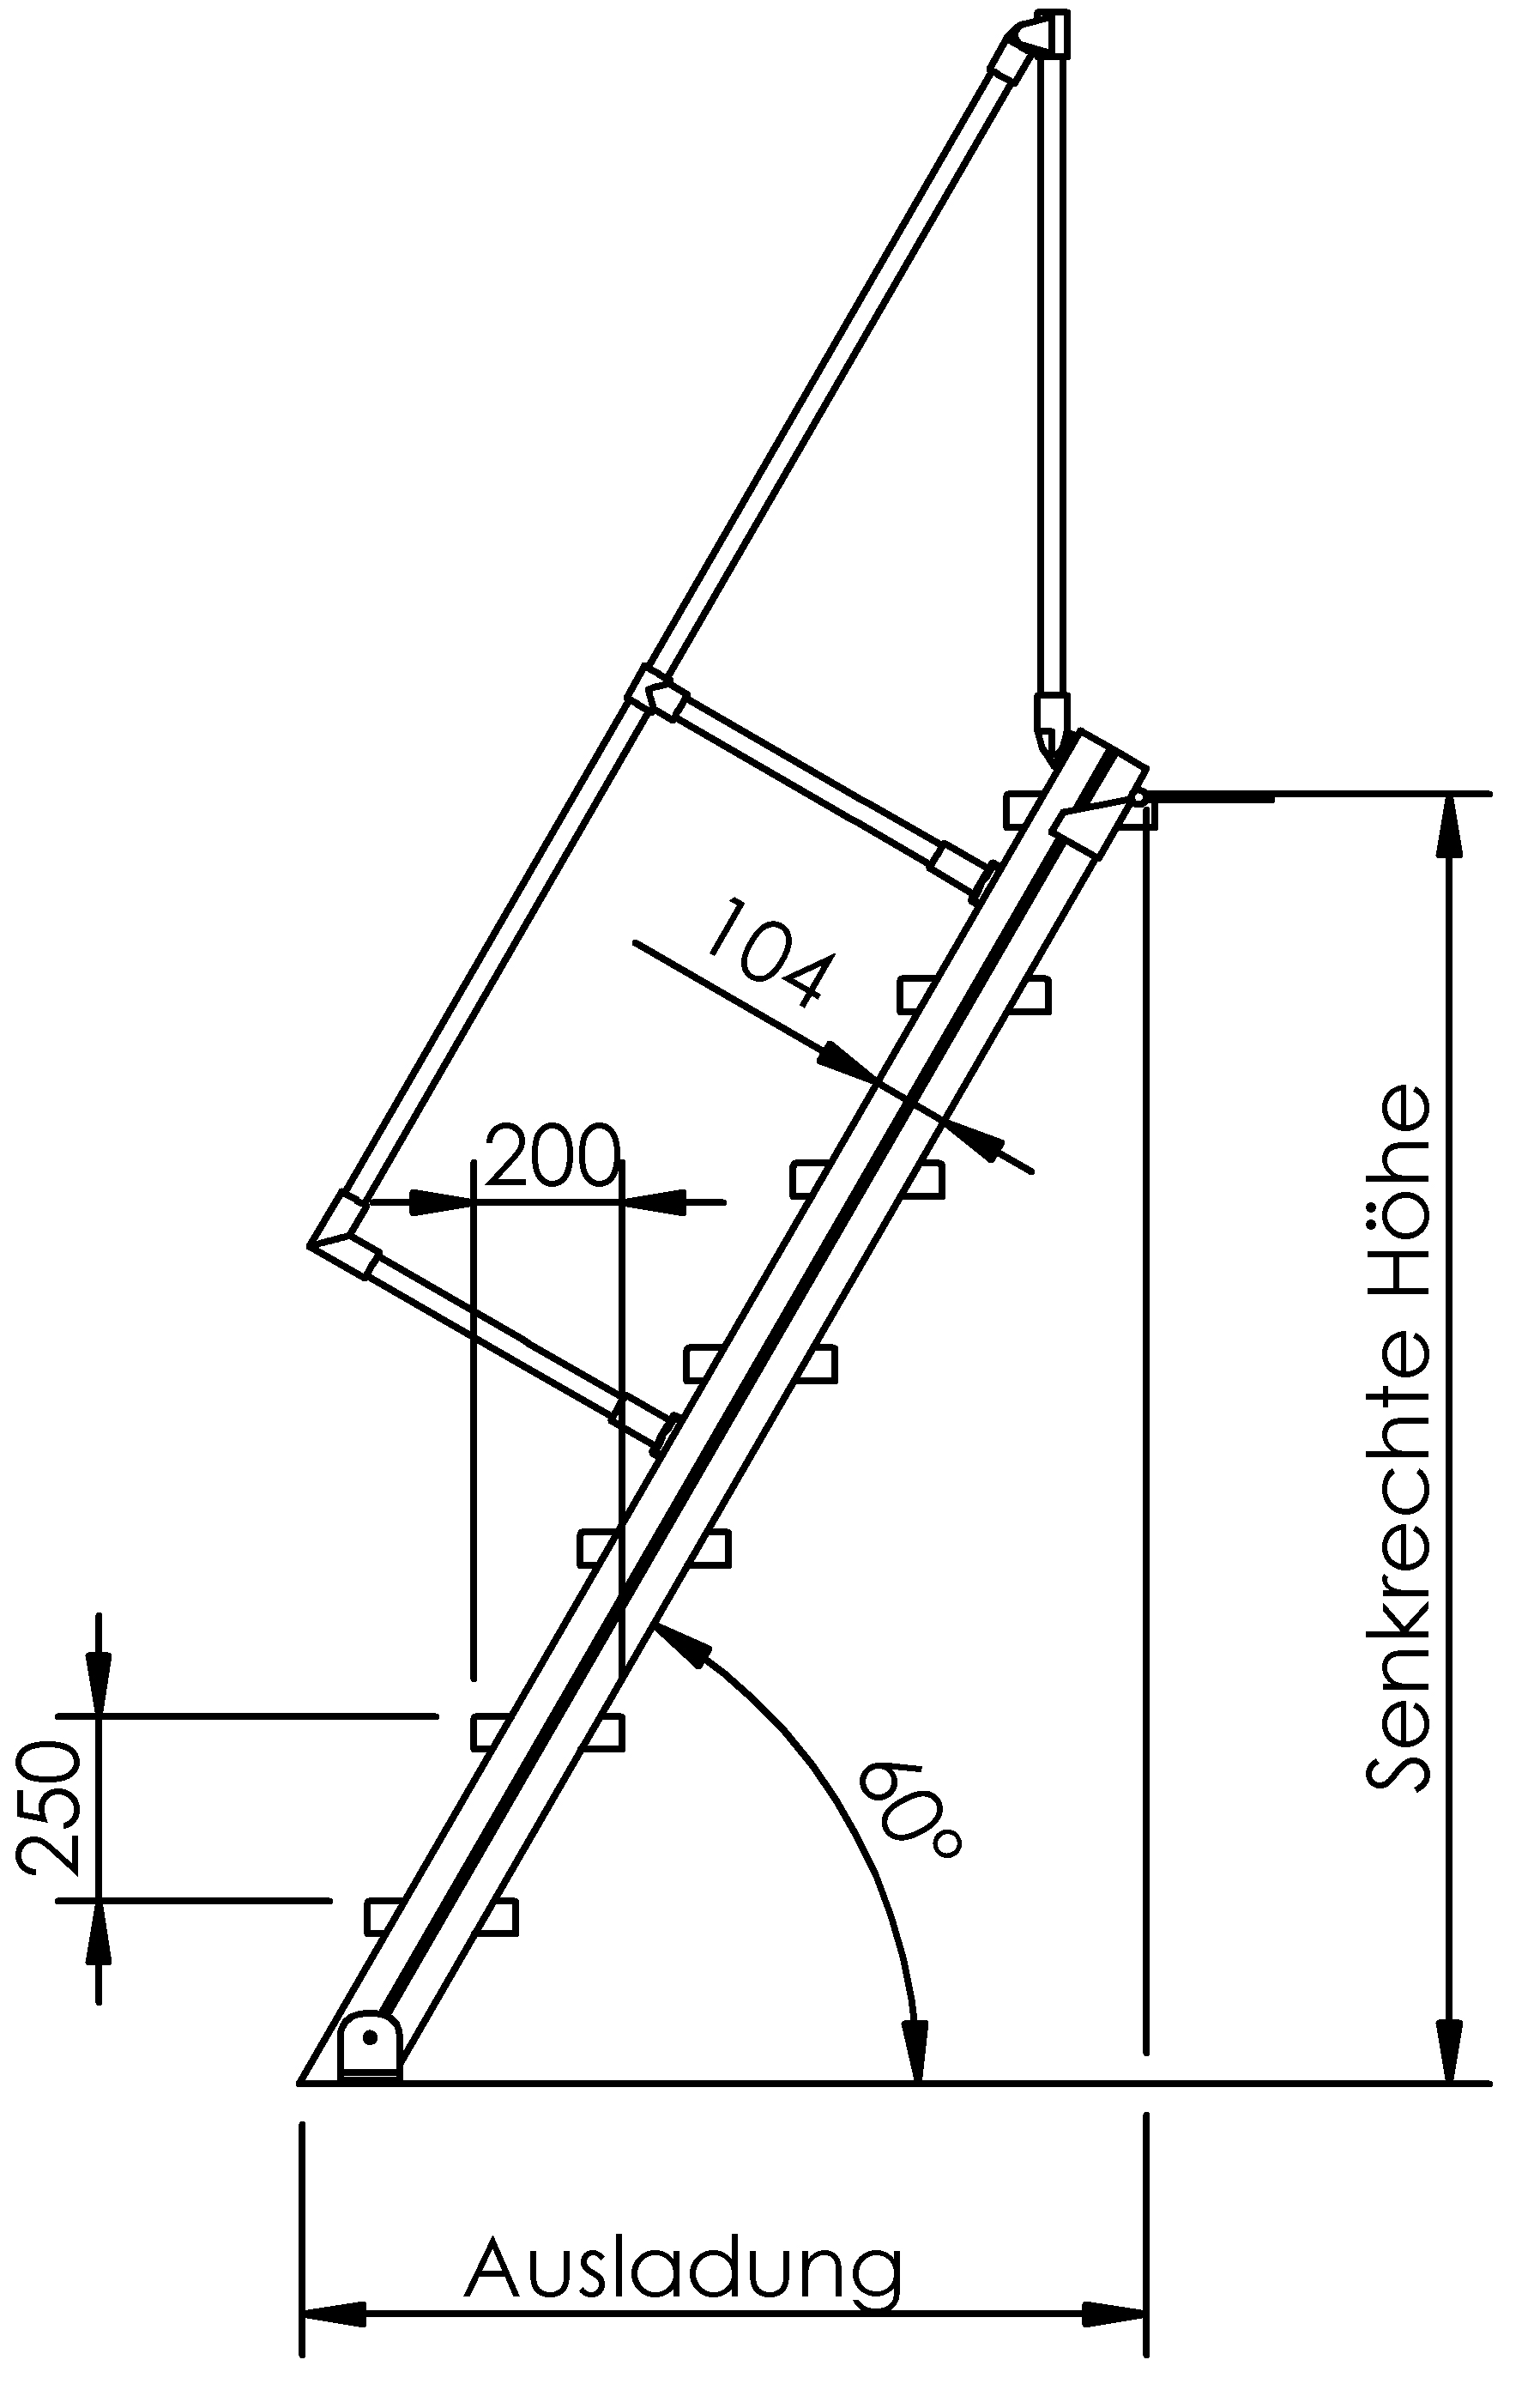 Selbstbautreppen, LW 600mm, Stufen aus Stahl, Neigung 45°